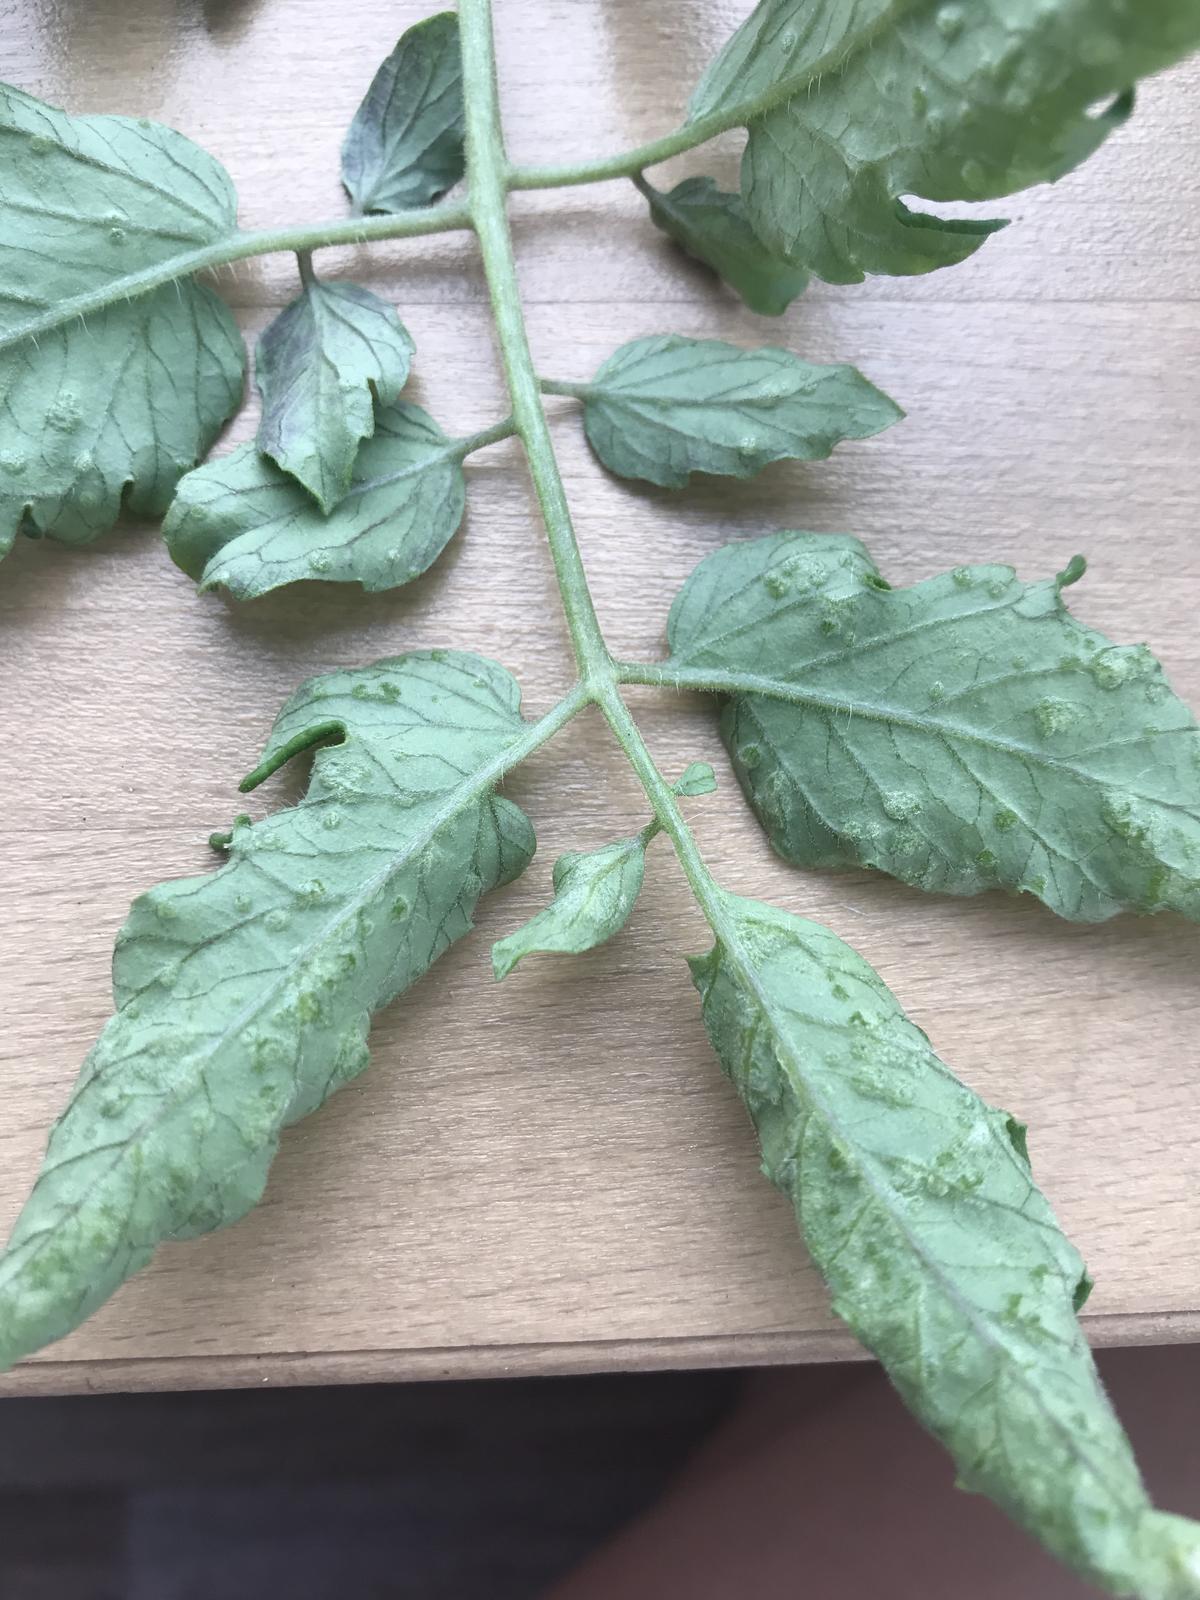 На листьях рассады томатов появились сухие пятна фото как лечить